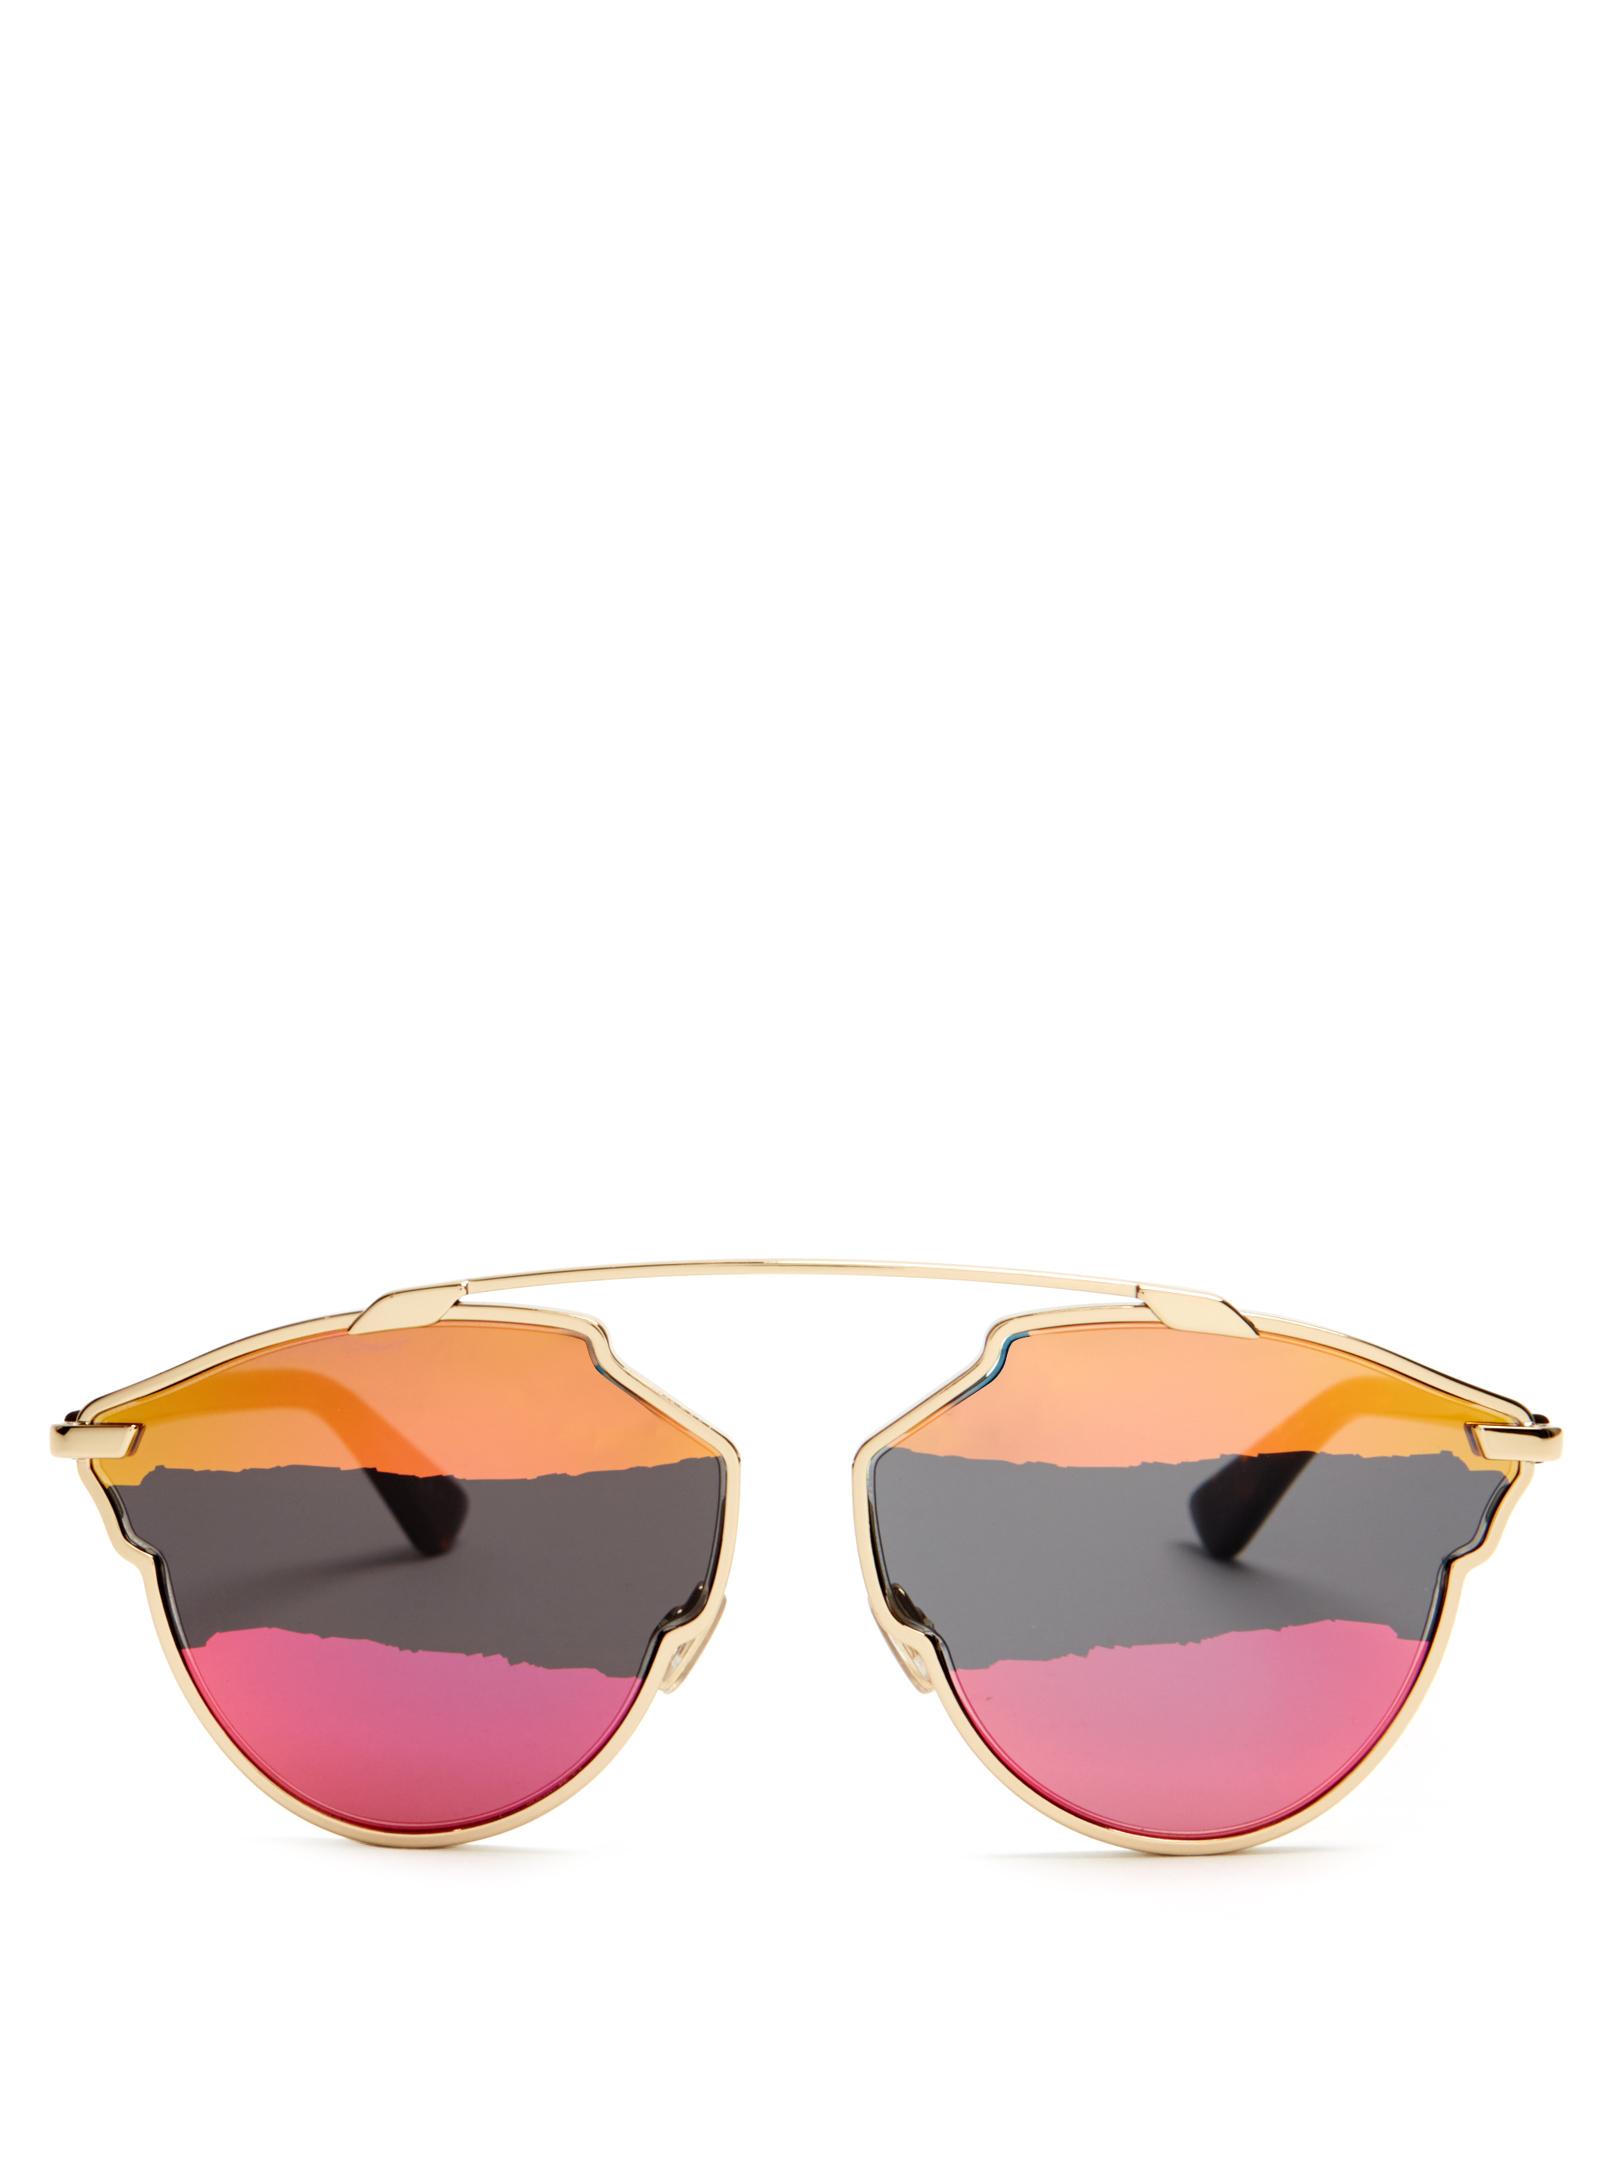 Dior So Real Pop Sunglasses Deals 57 OFF  moovingcomuy